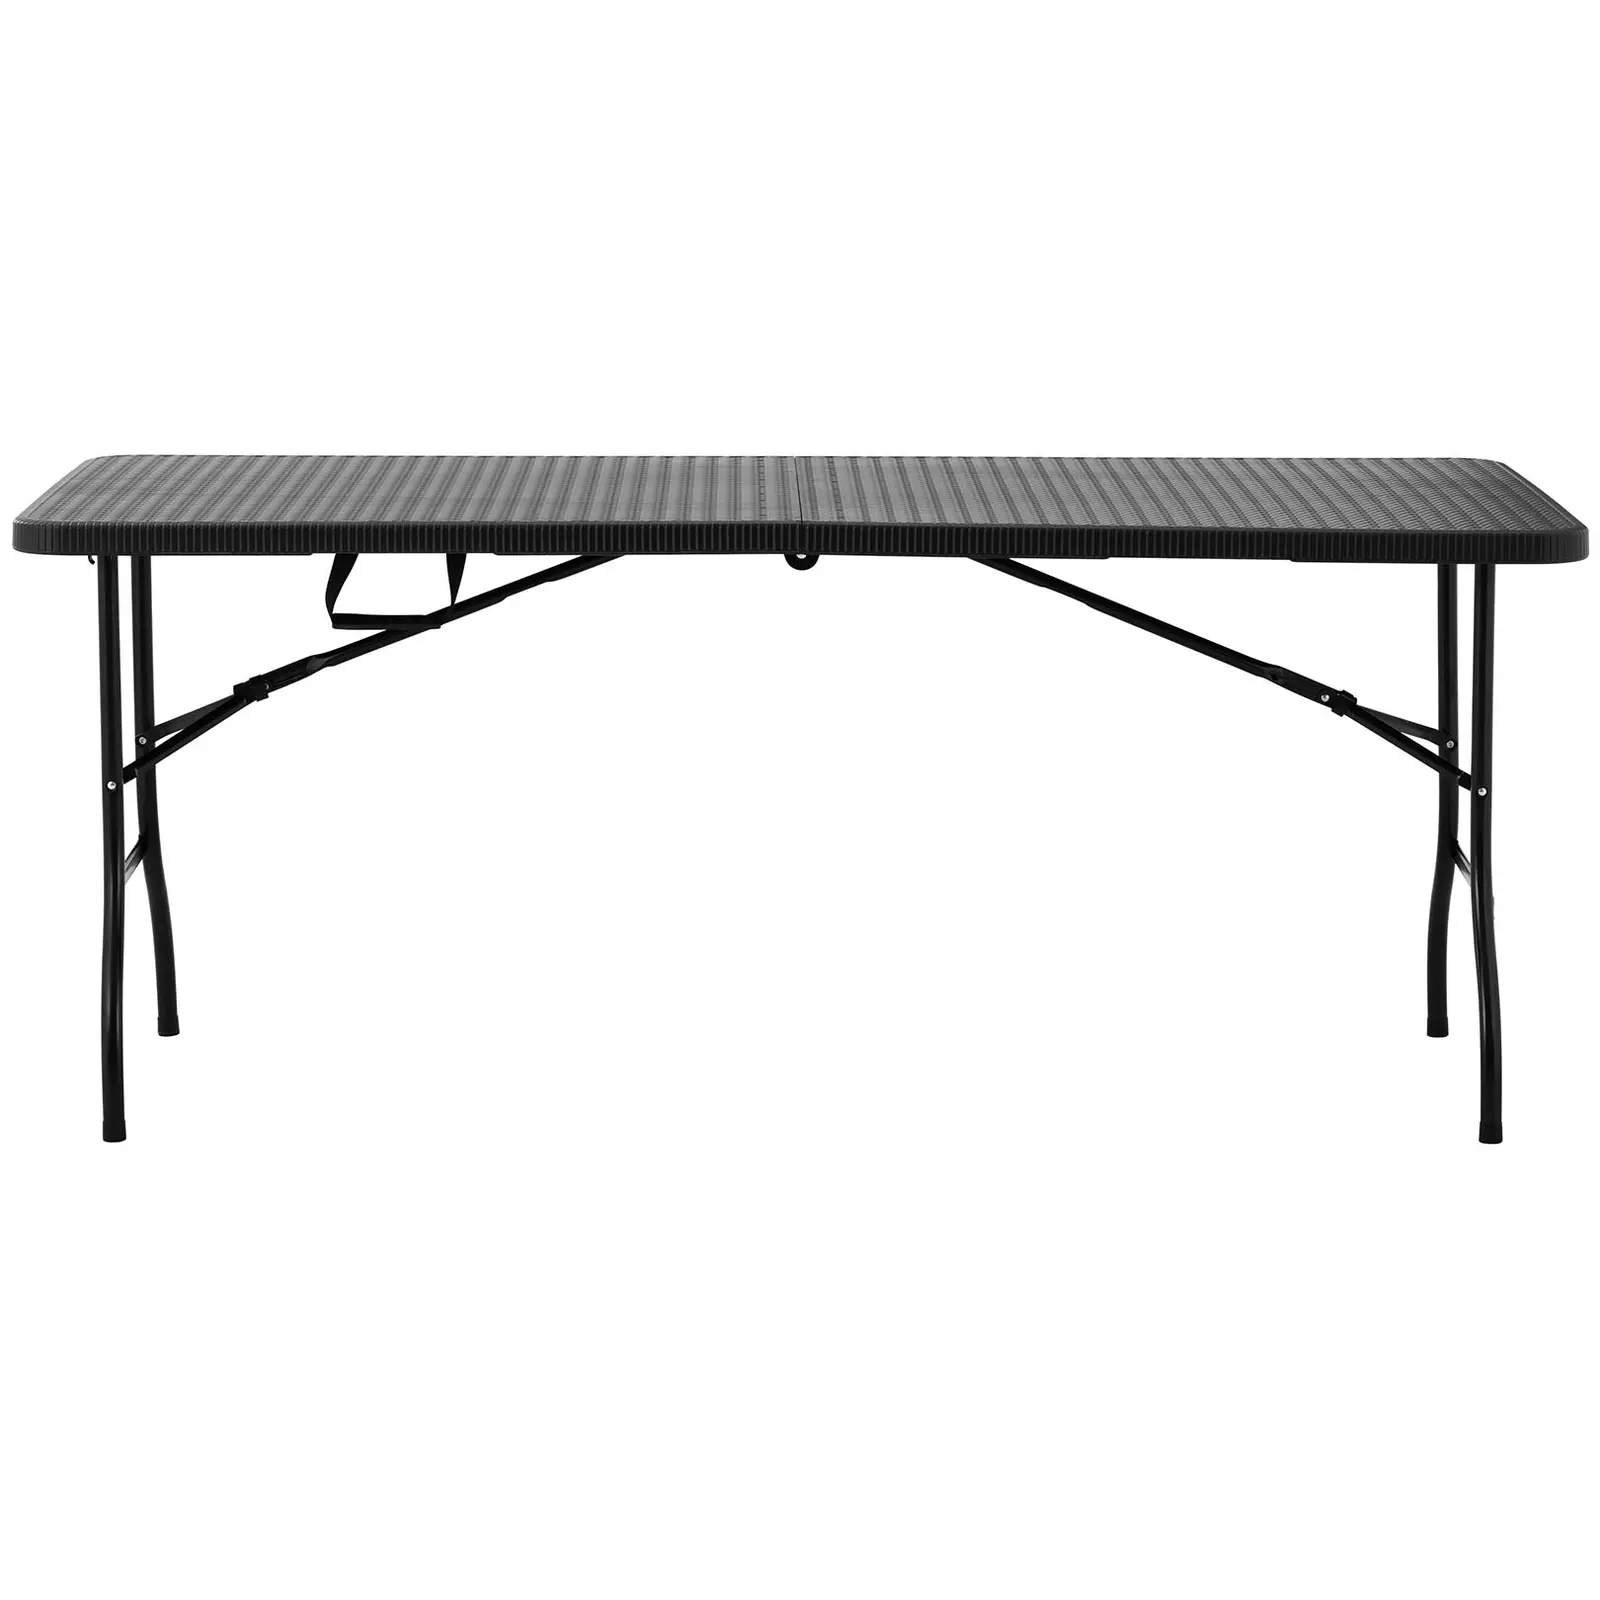 Table pliante - 1 830 x 750 x 740 mm - Royal Catering - 150 kg - Intérieur/extérieur - Blacke